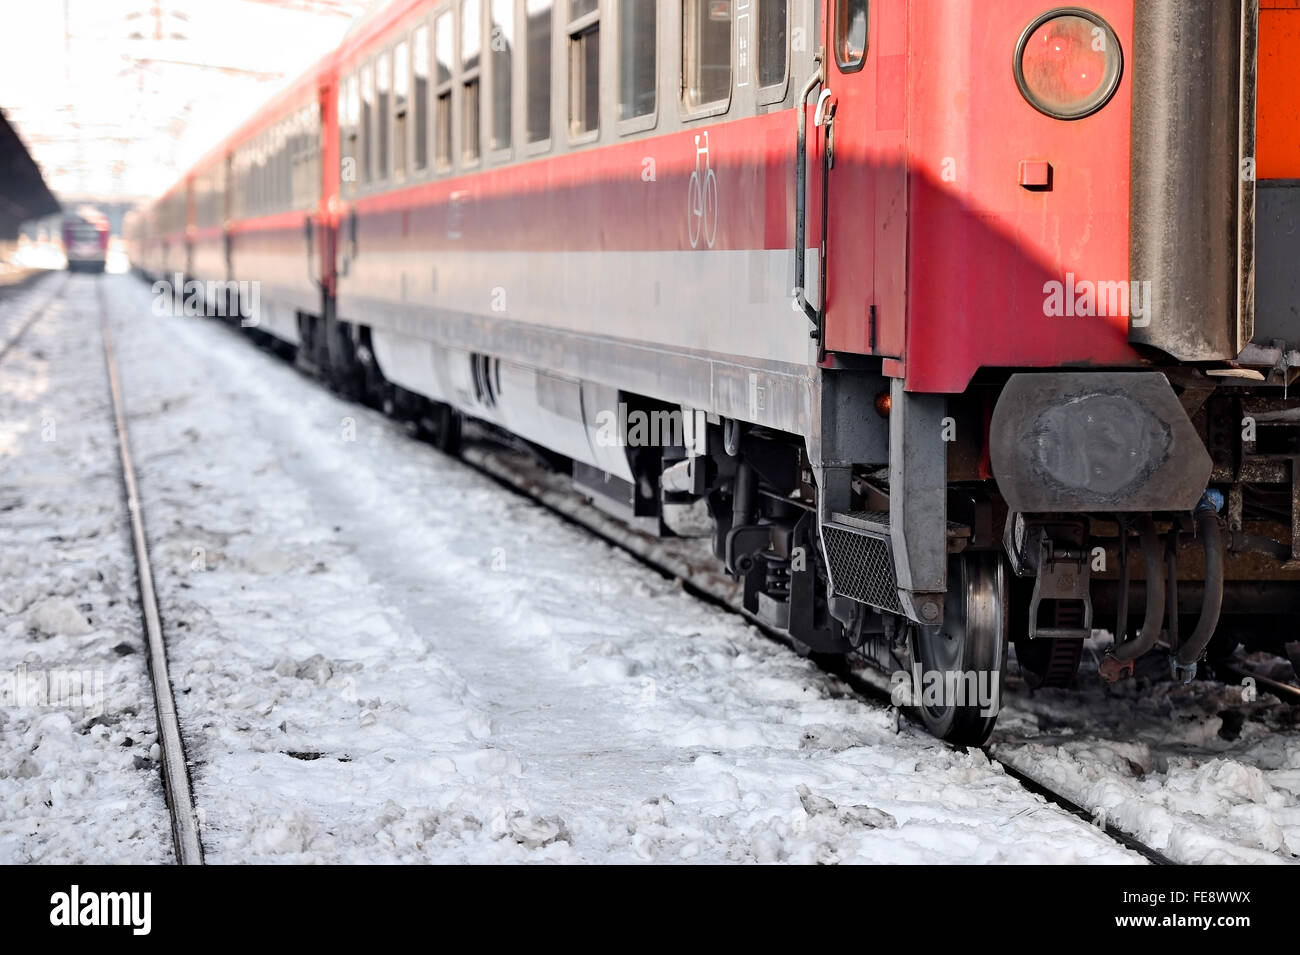 Dettaglio con un vagone del treno in una stazione ferroviaria nella stagione invernale Foto Stock